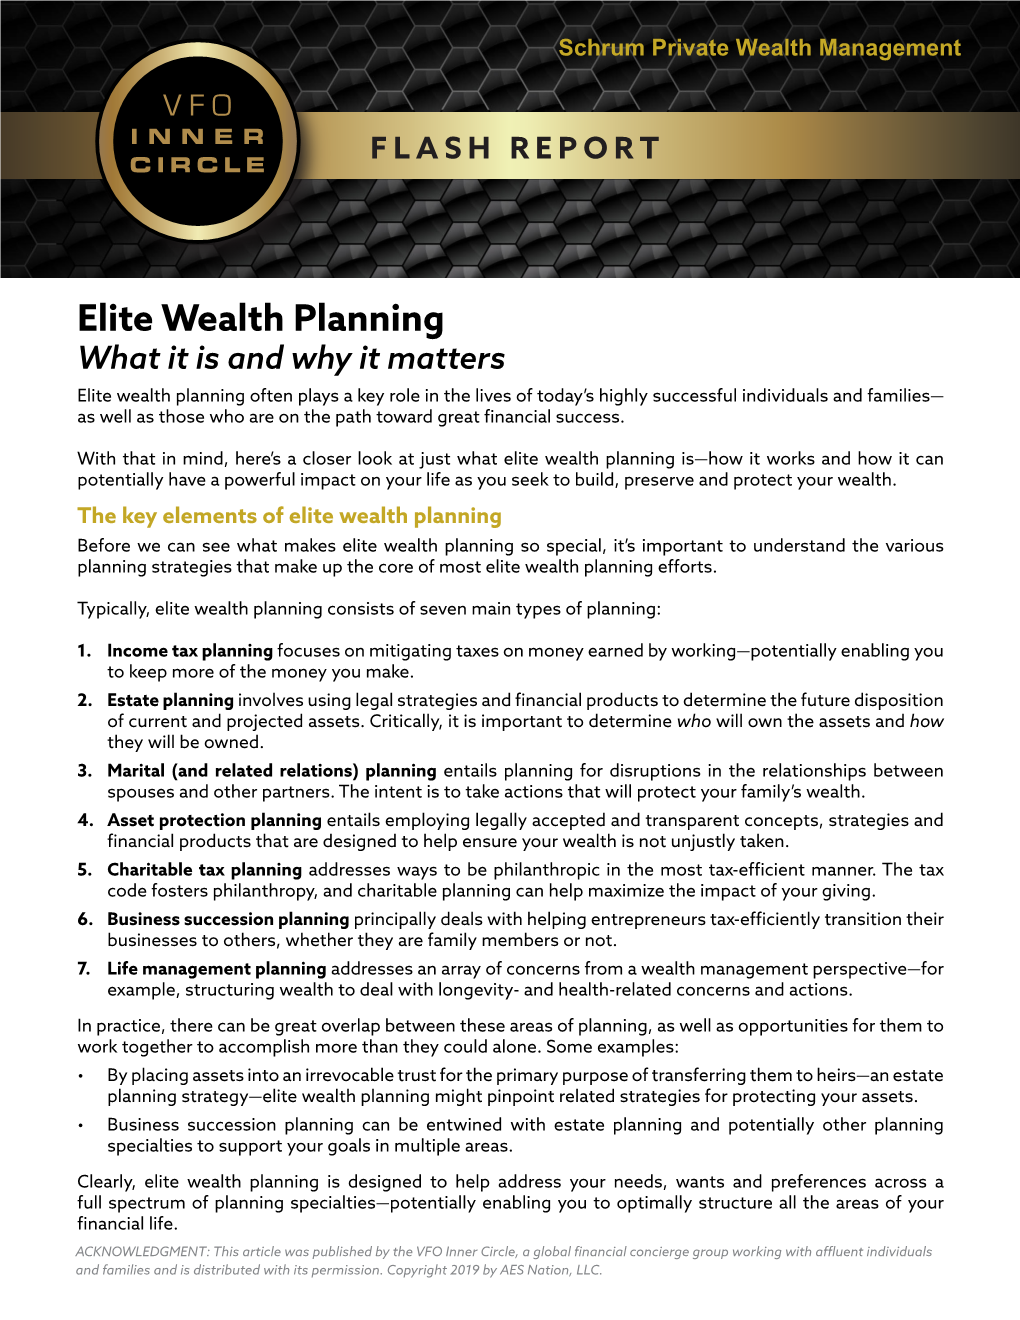 Elite Wealth Planning